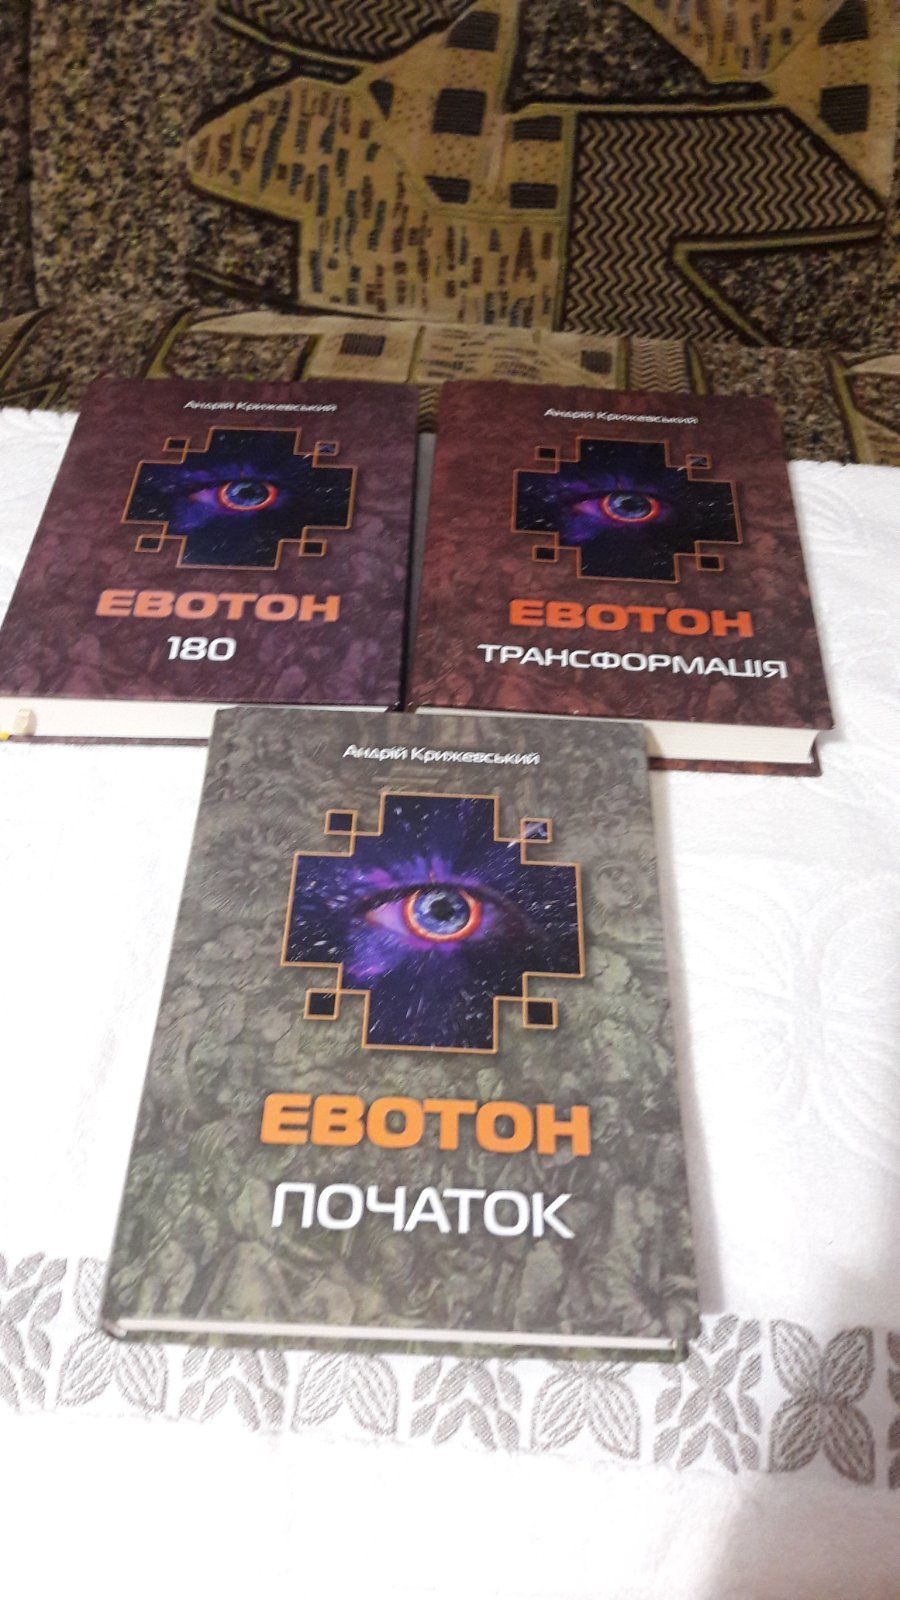 Книги українською